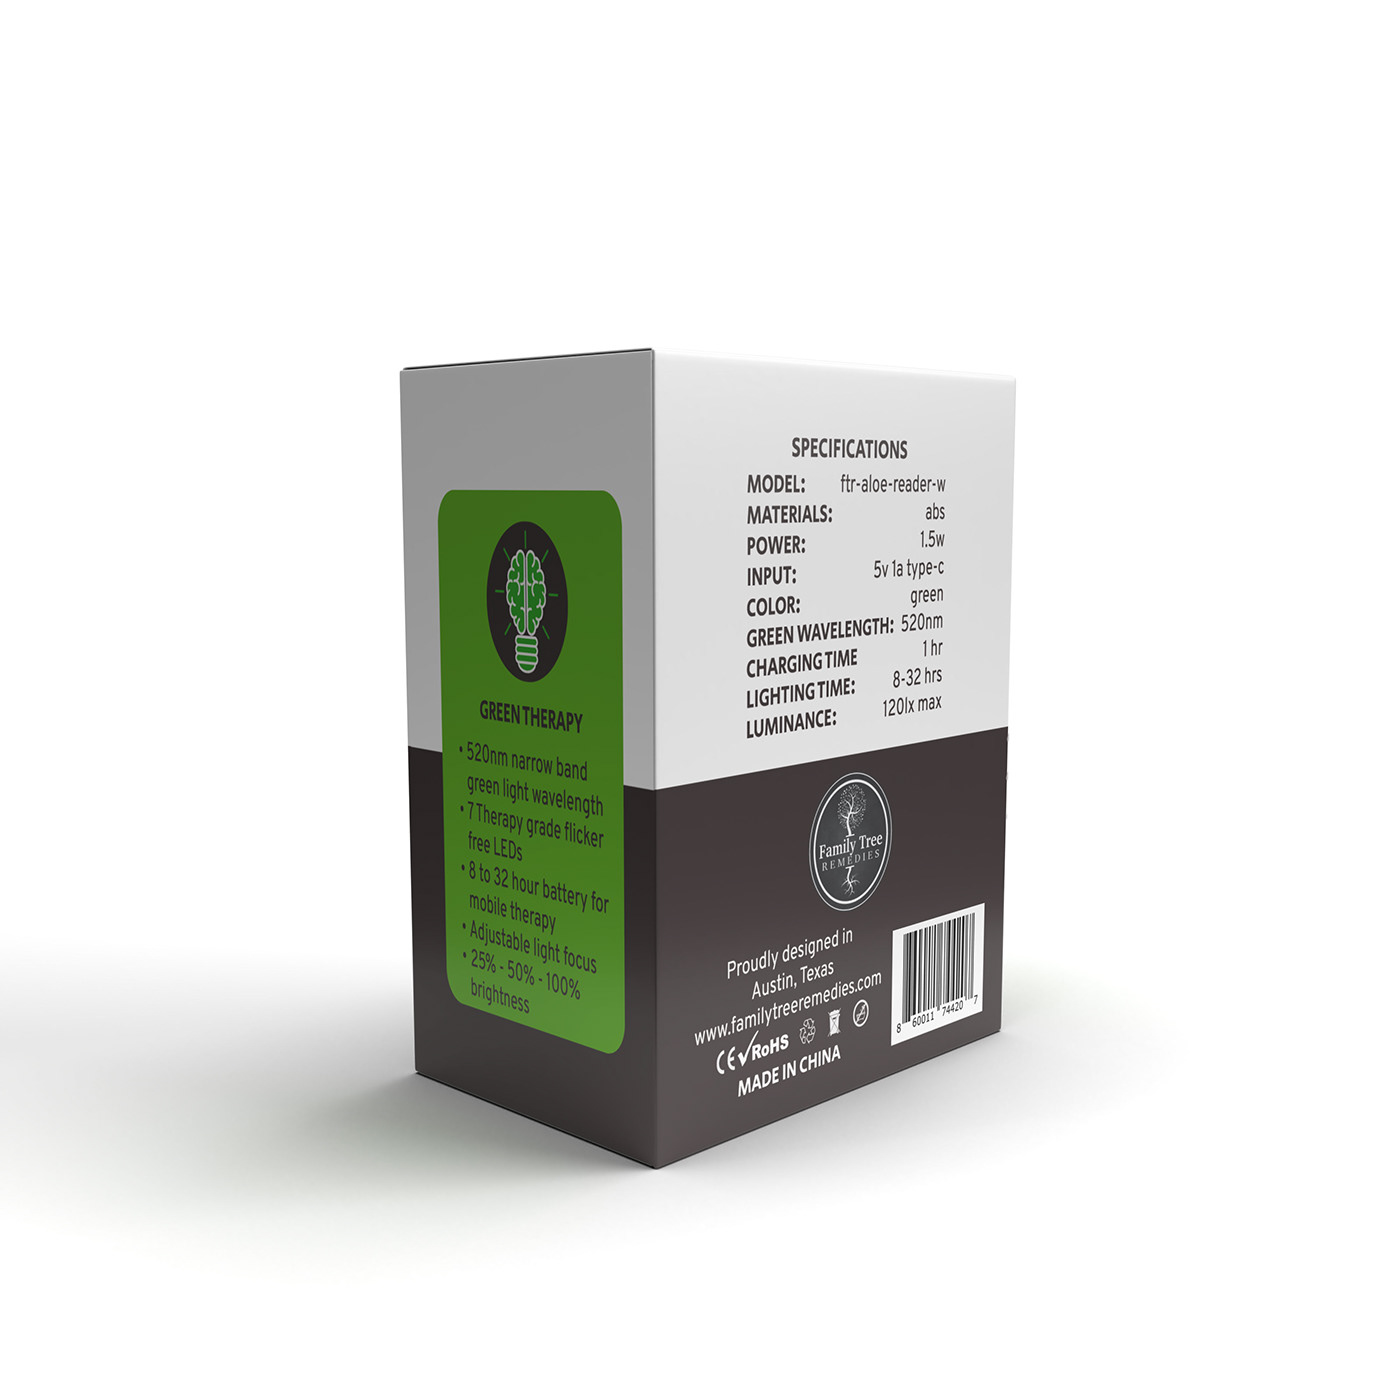 box design Mockup packaging design 3d modeling Render visualization modern box Packaging